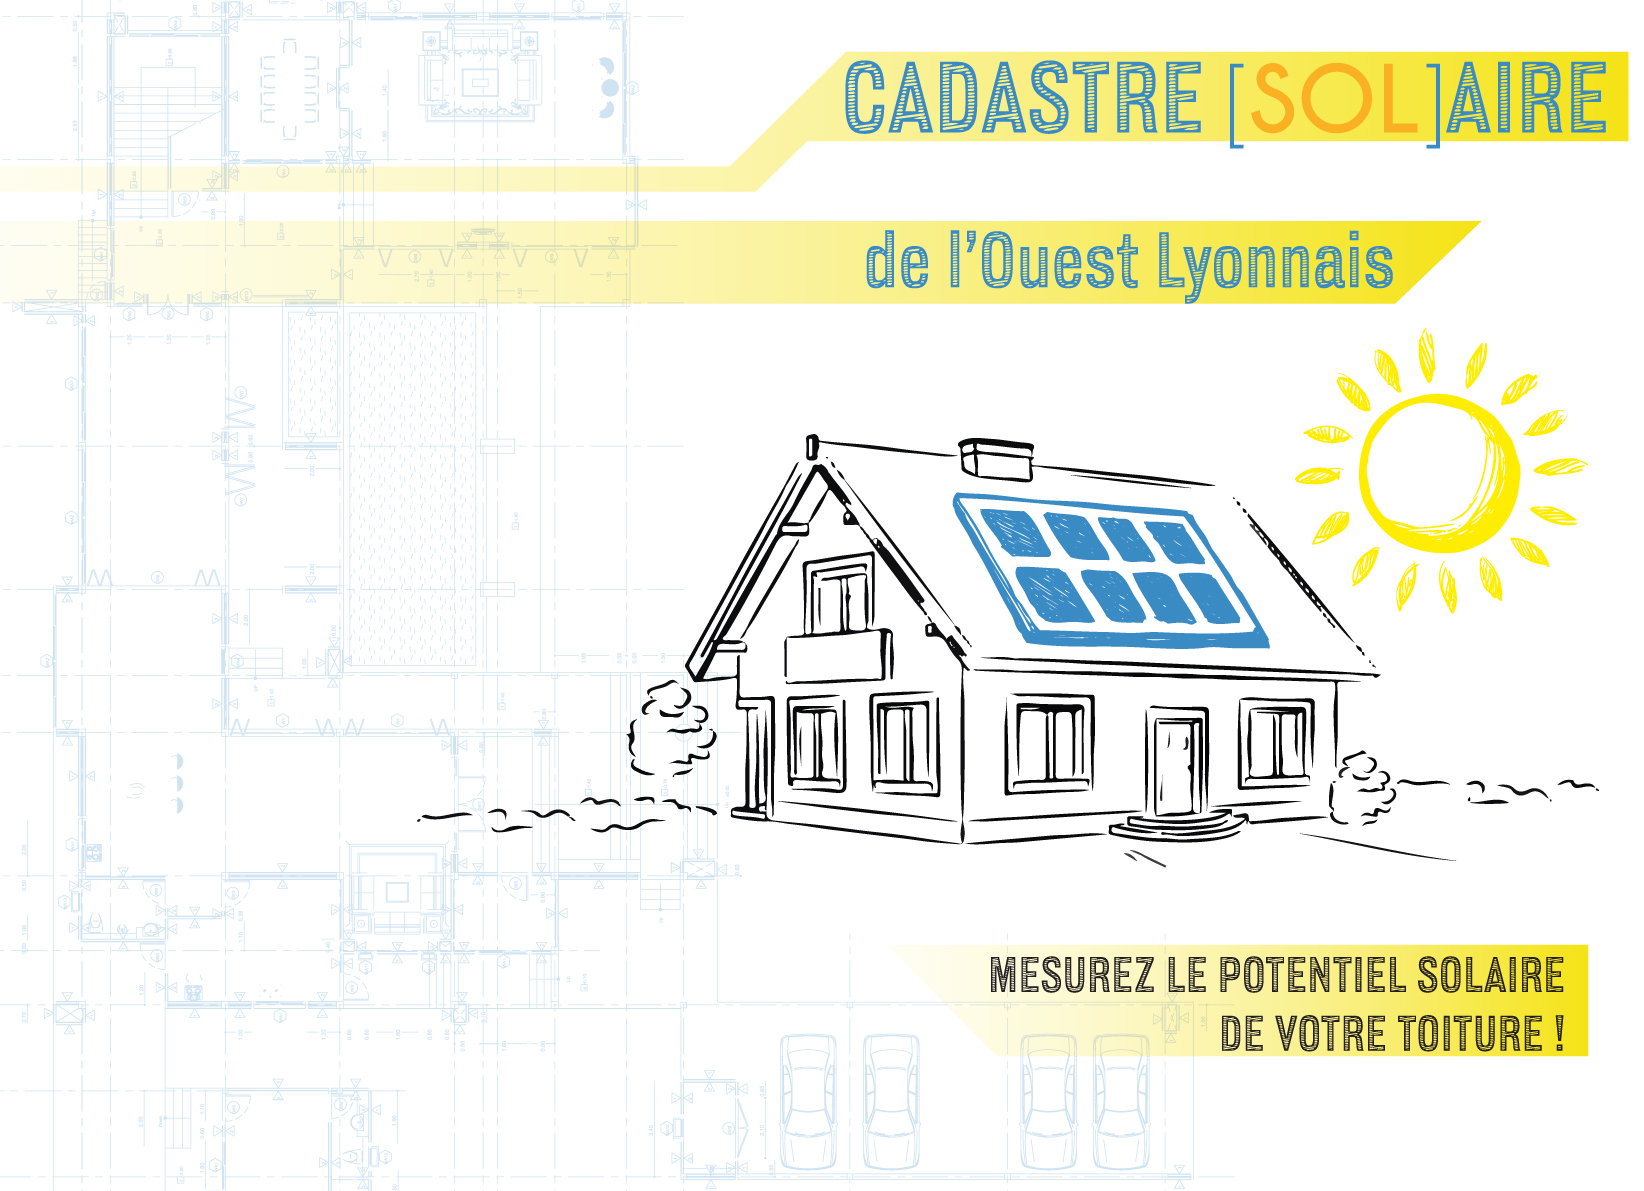 Cadastre solaire : mesurez le potentiel solaire de votre toiture !